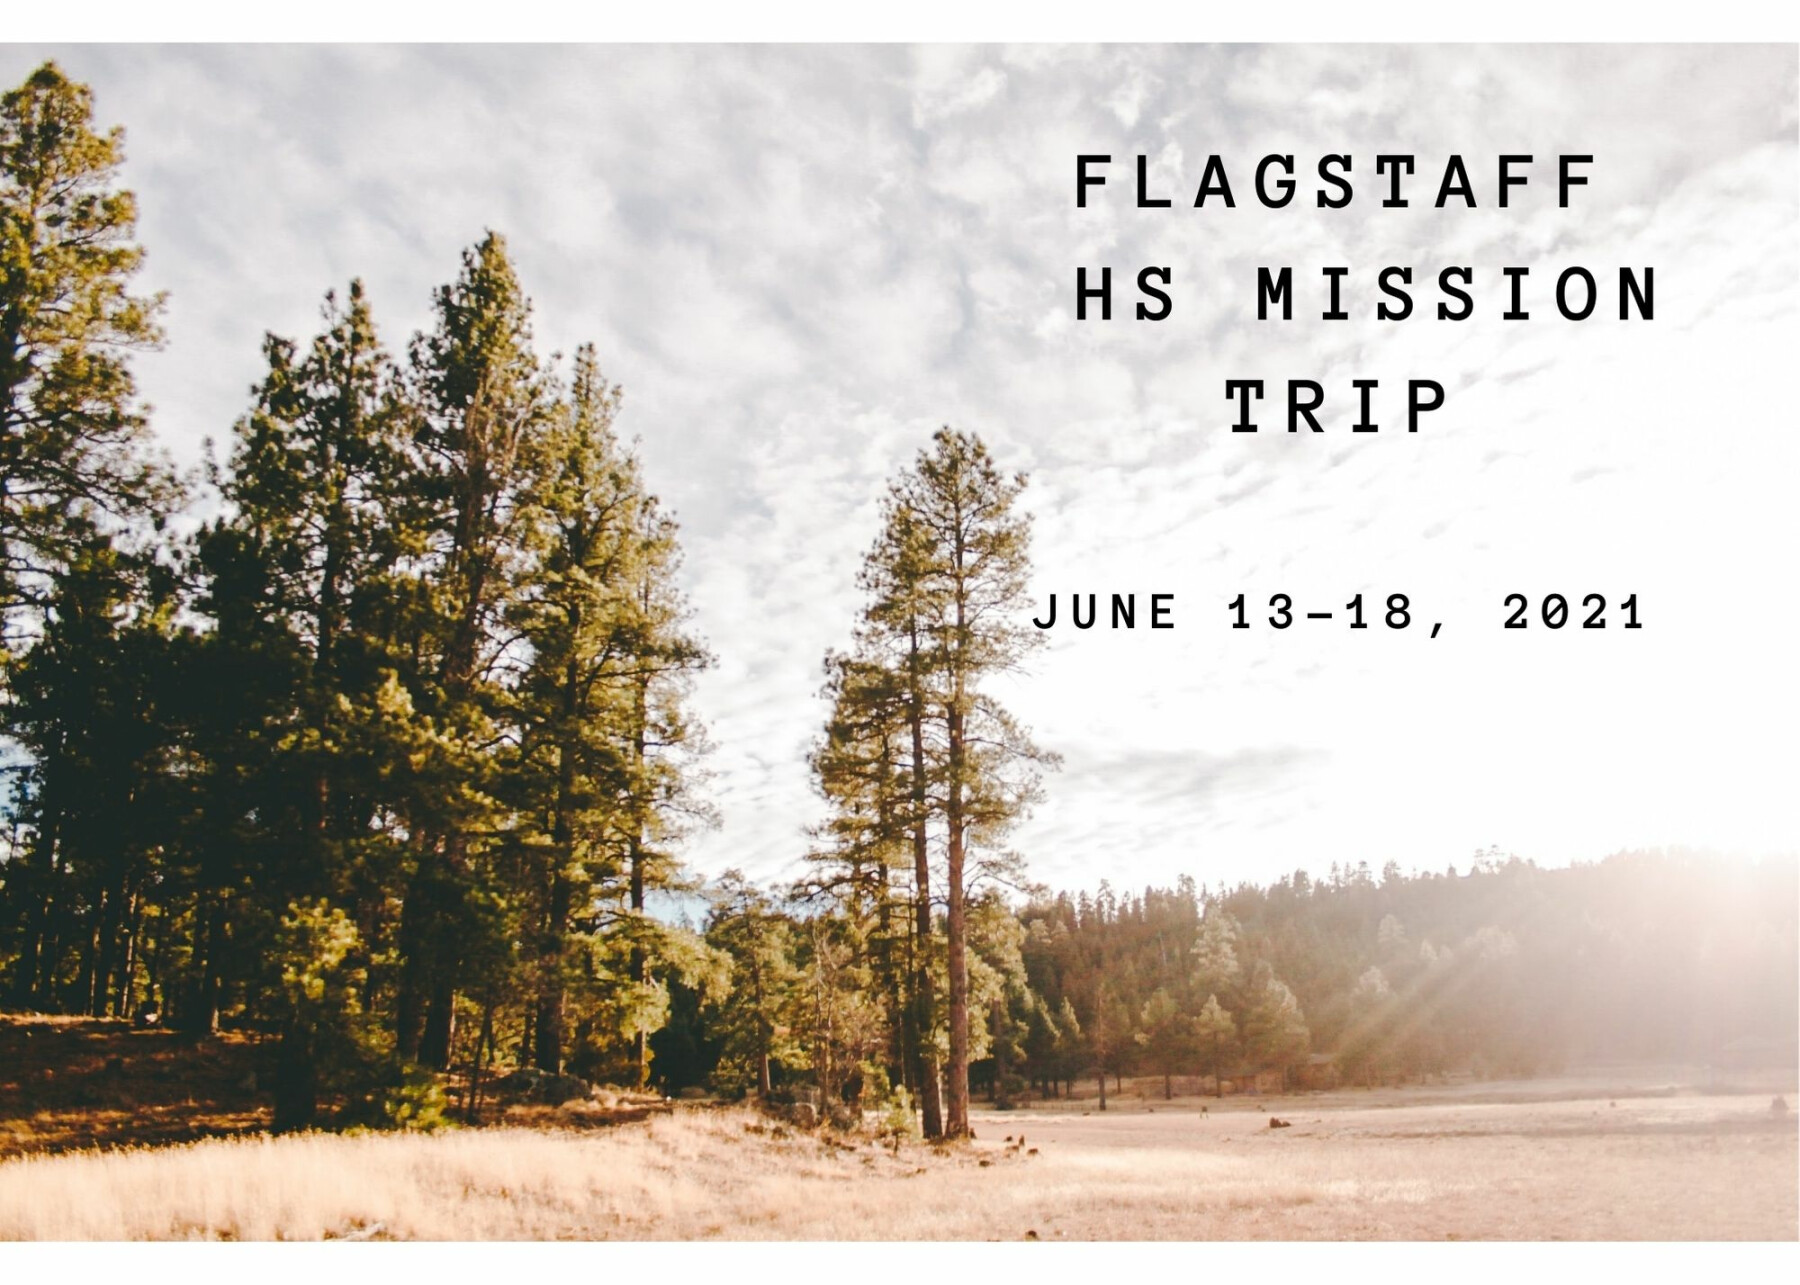 High School Mission Trip- Flagstaff, AZ